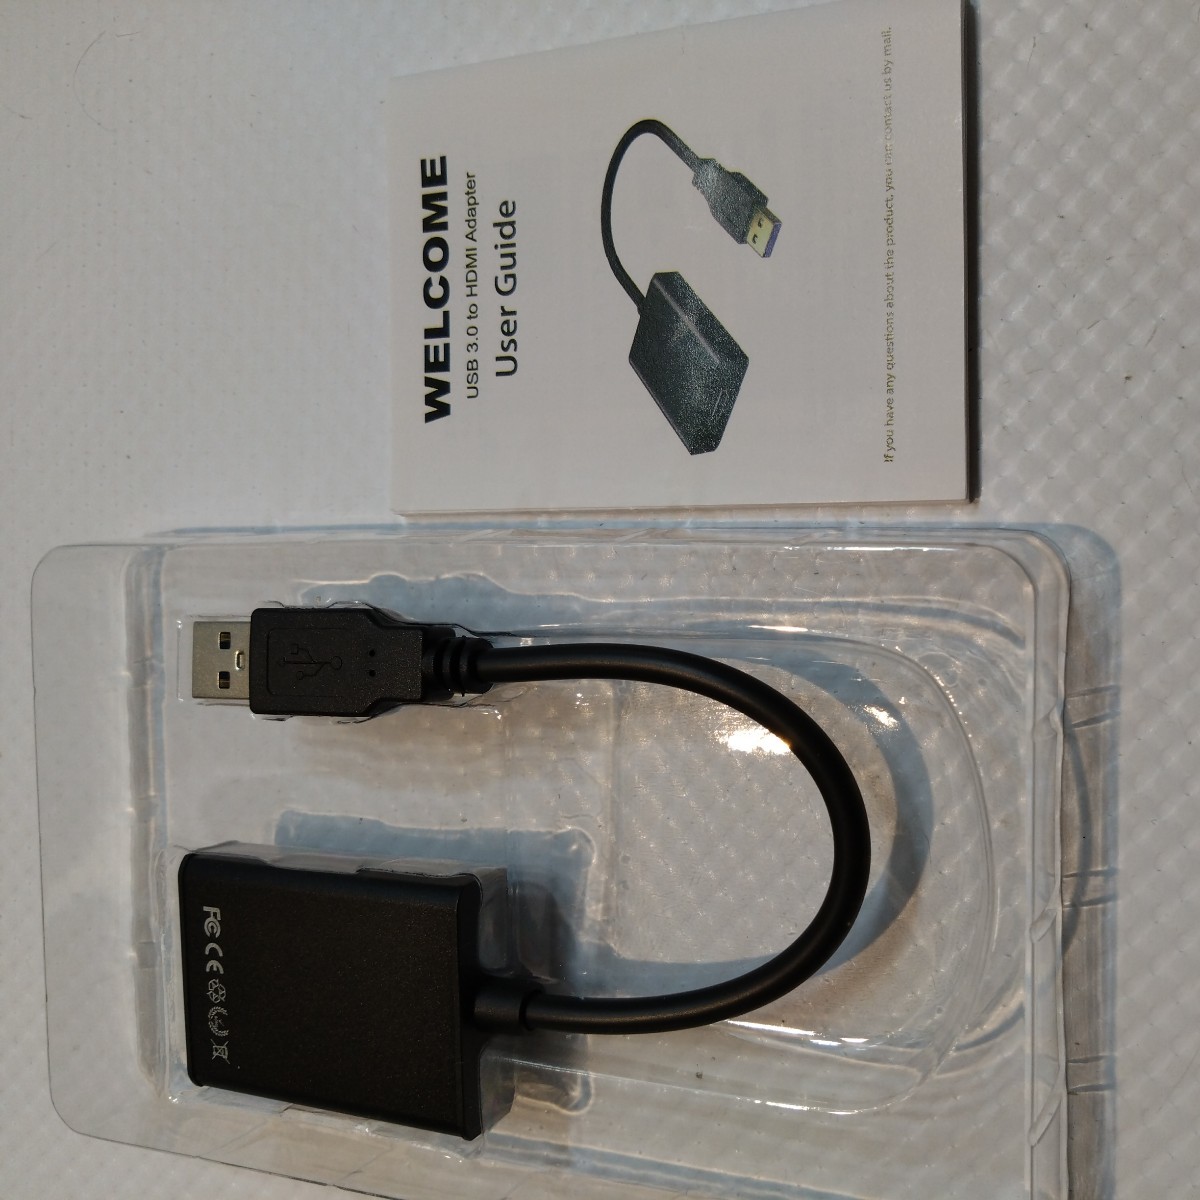 【未使用に近い】Yirui USB HDMI 変換アダプタ 5Gbps高速伝送 usb ディスプレイアダプタ 1080P 耐用性良い USB HDMI 変換コネクタ no.1288_画像7